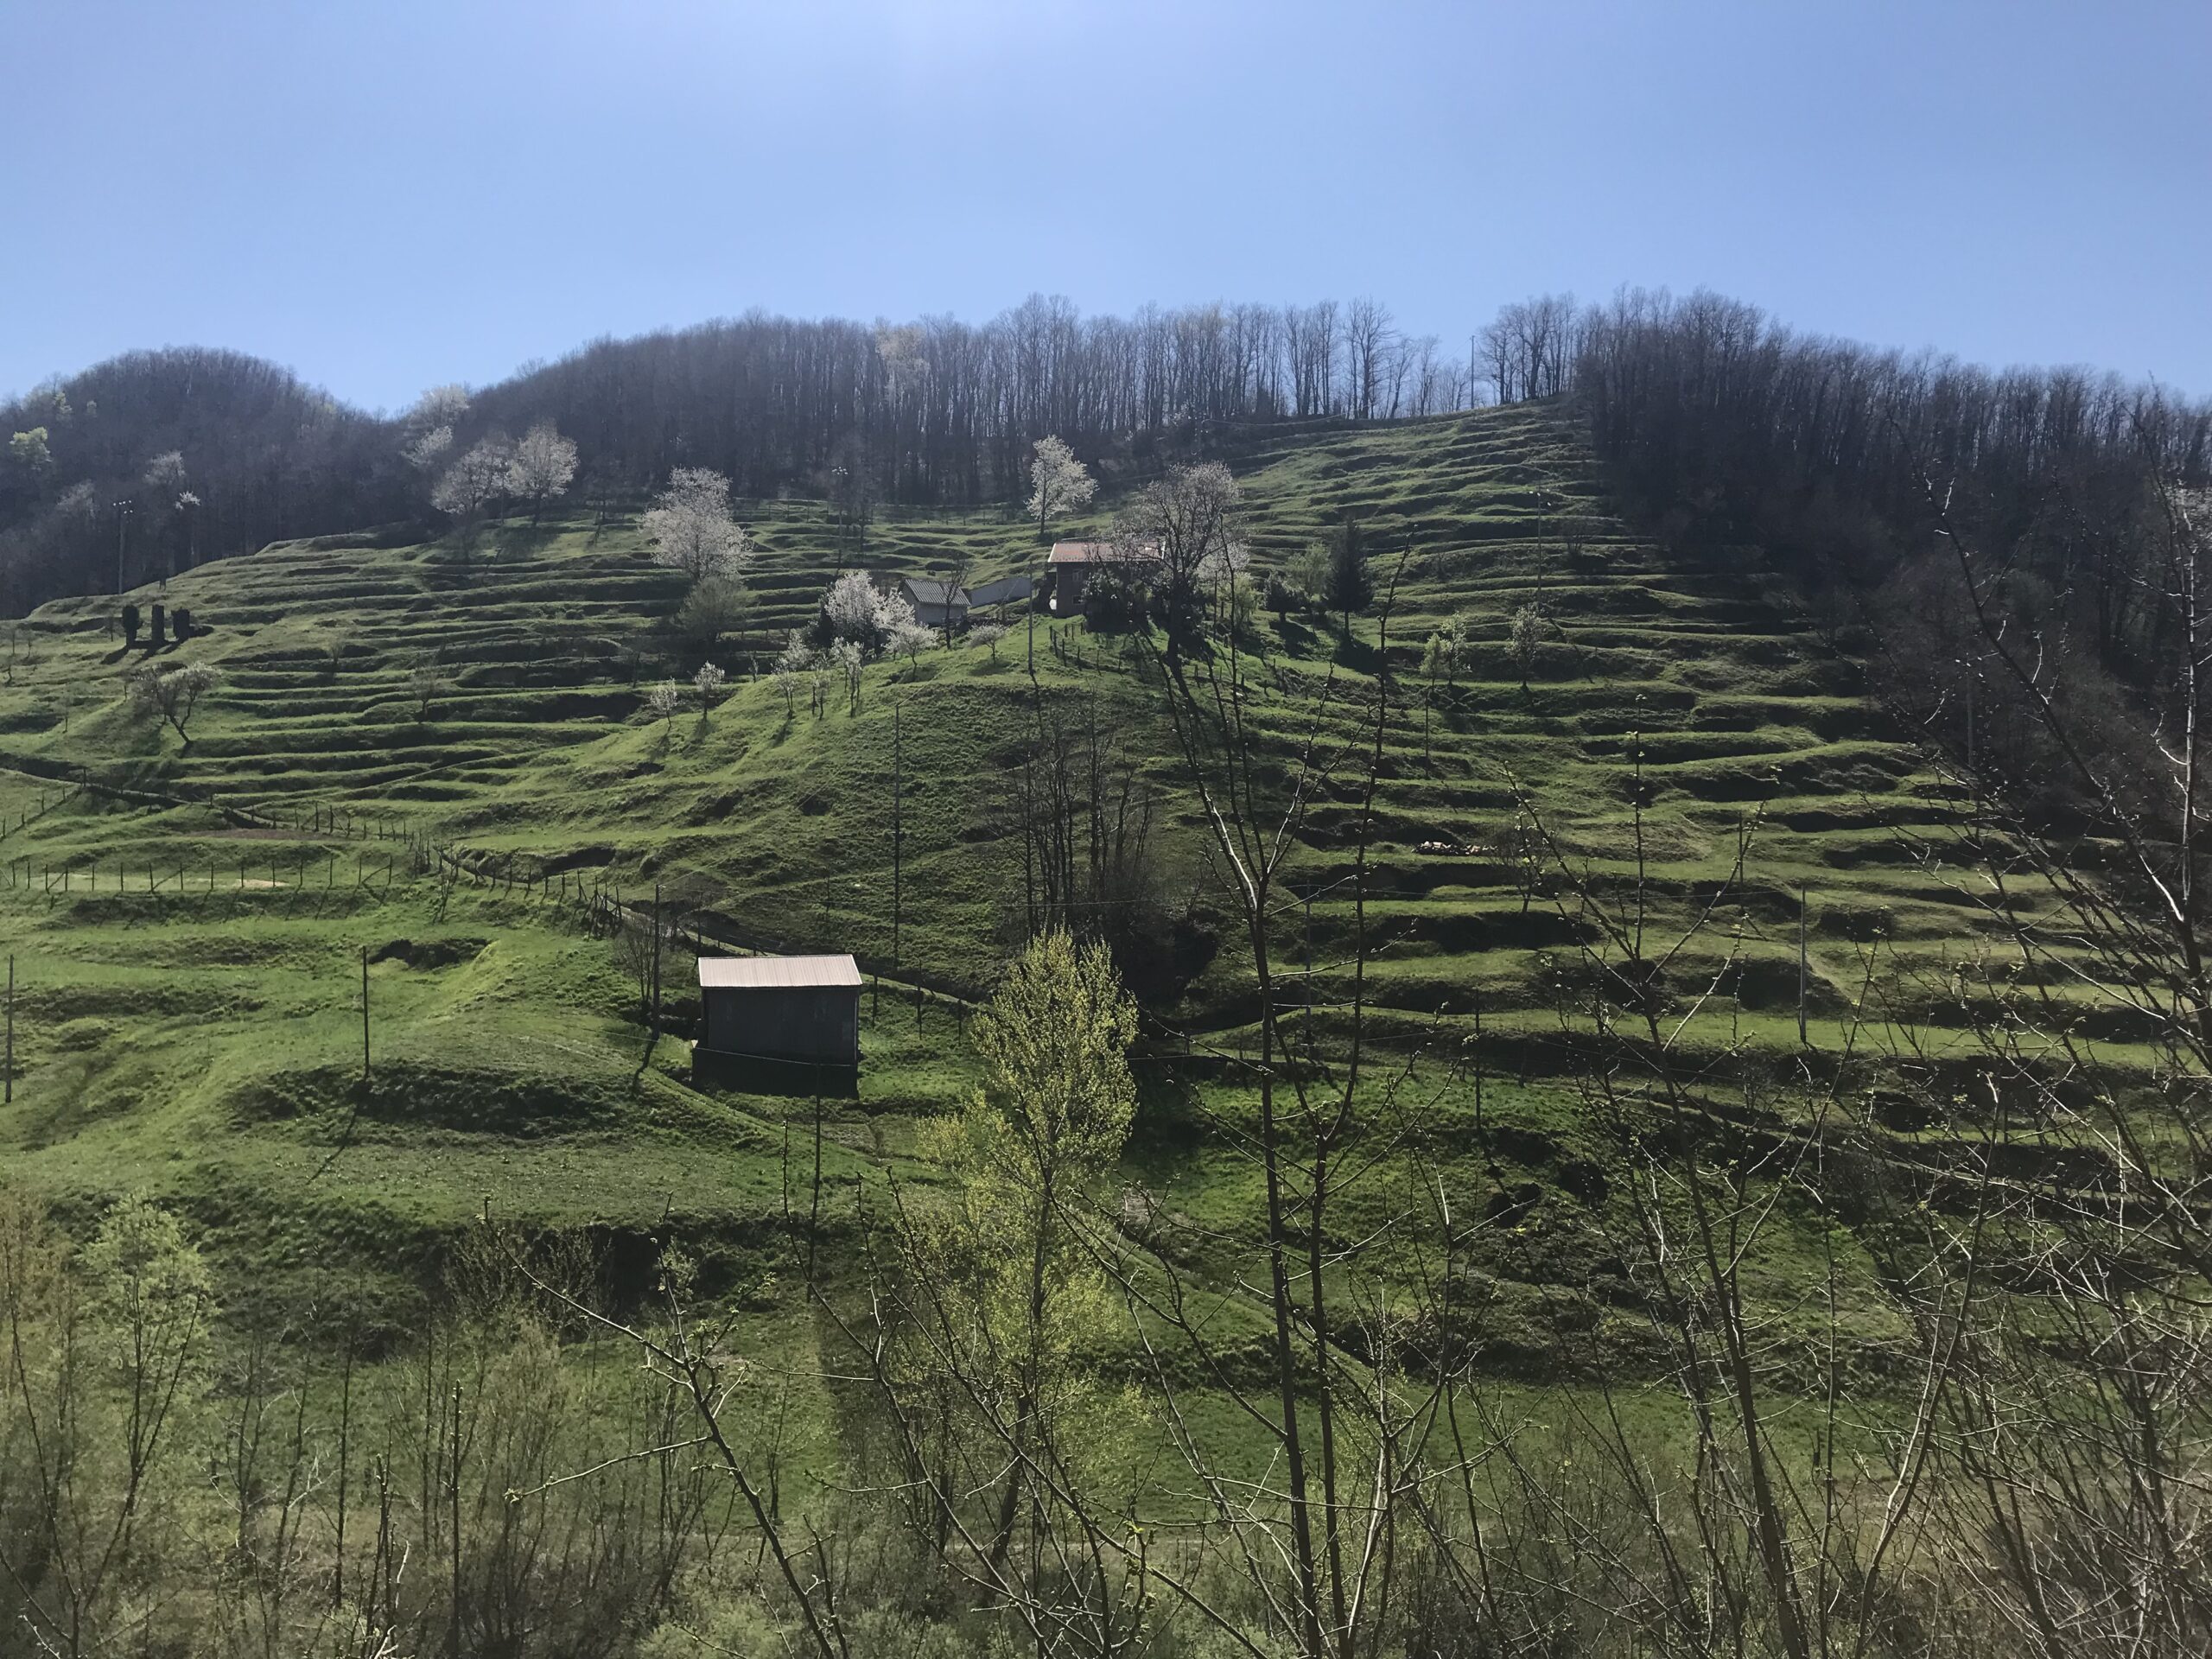 La campagna verdeggiante a Campo Ligure